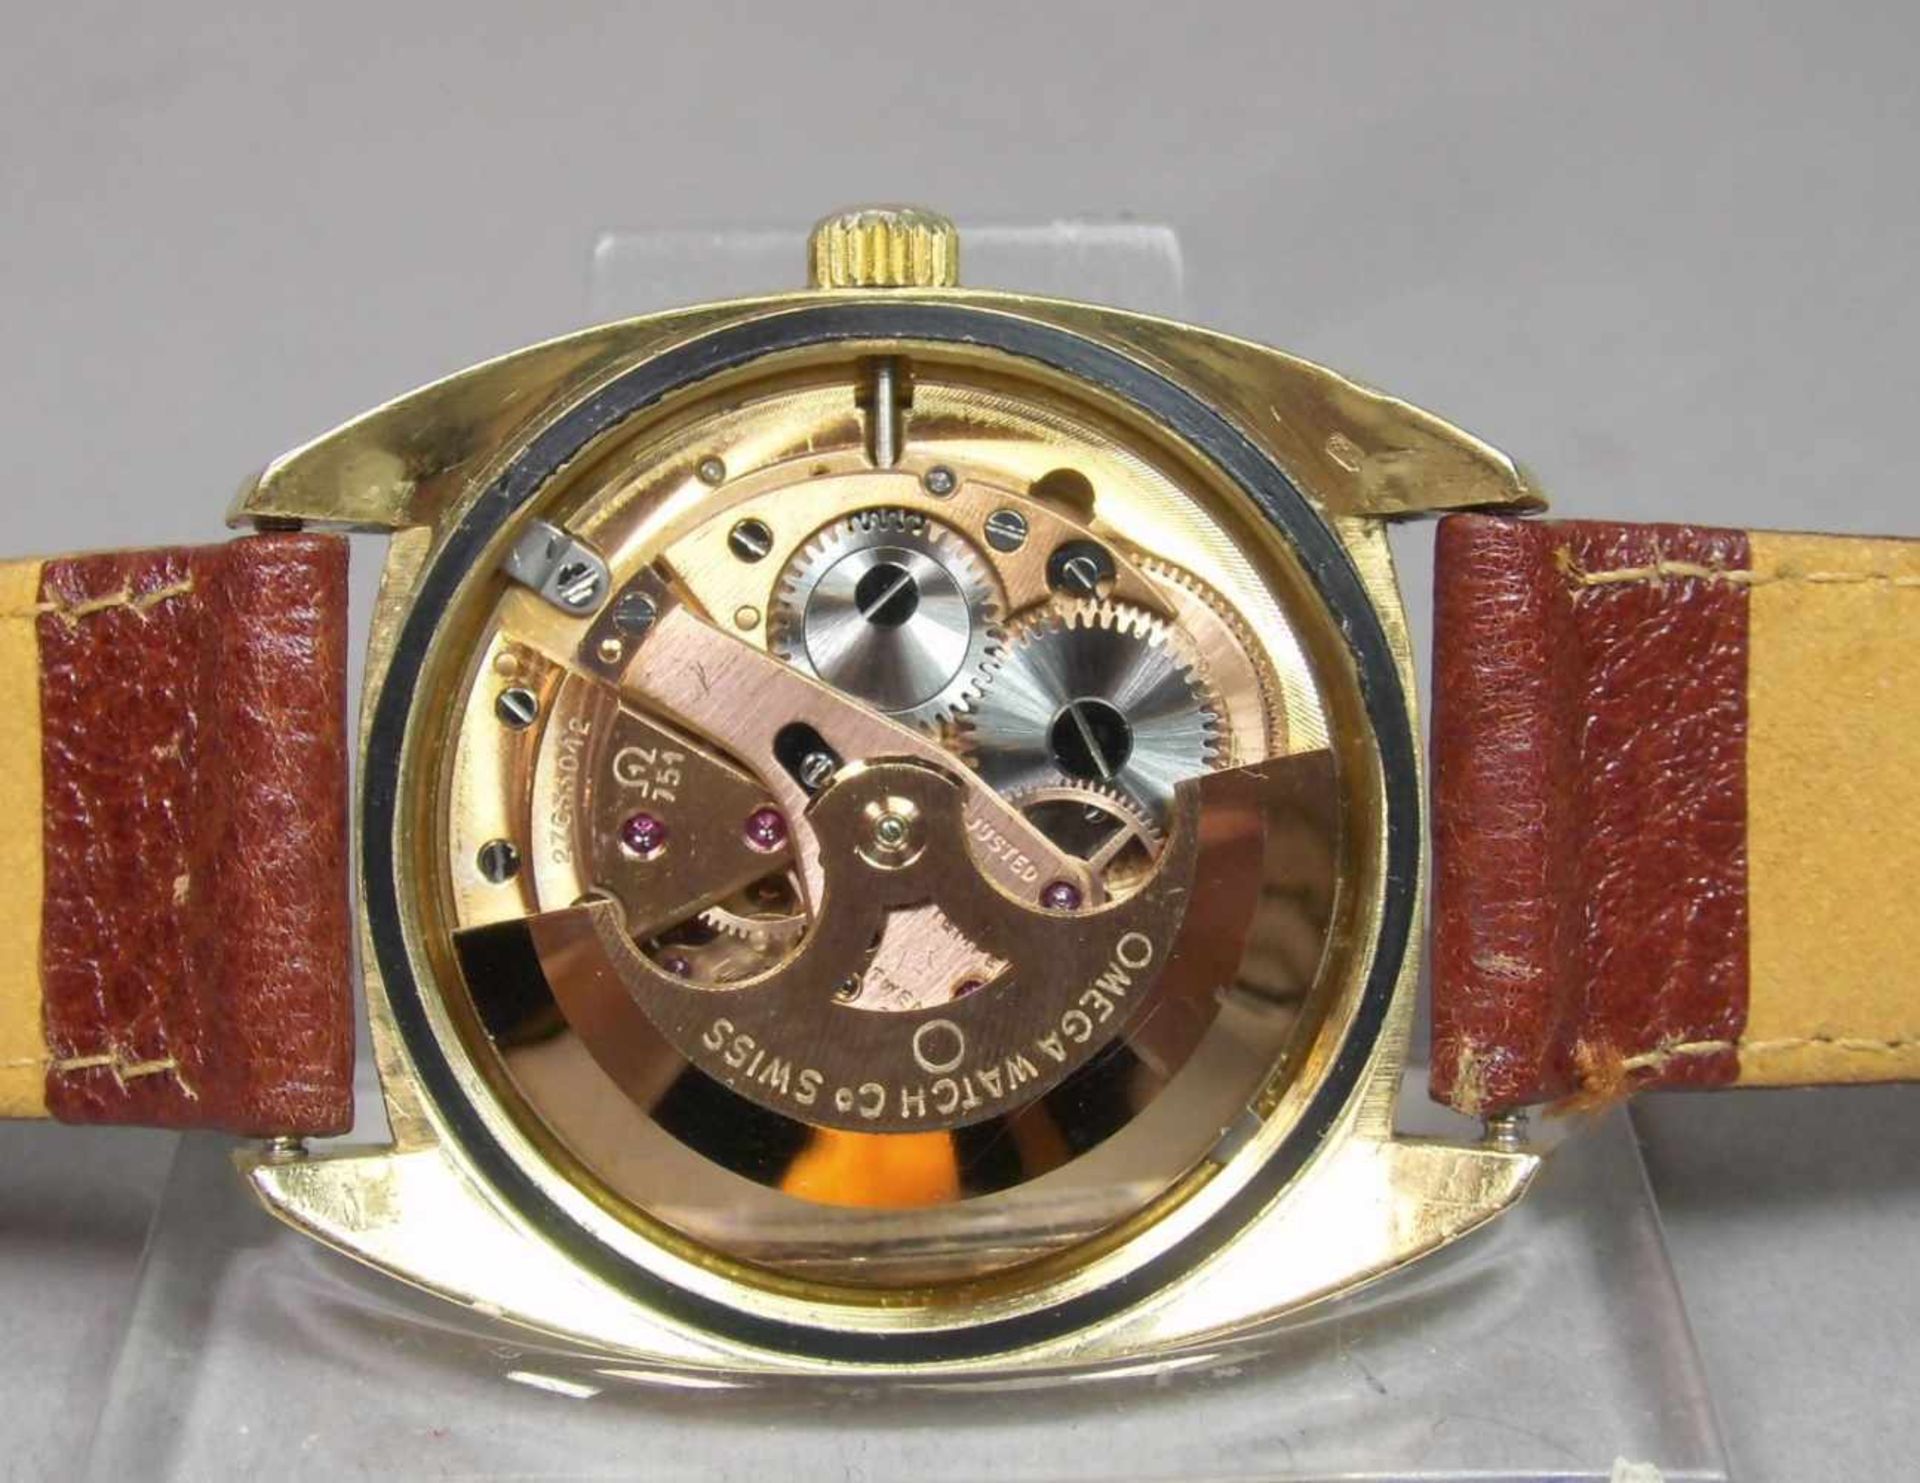 VINTAGE ARMBANDUHR: OMEGA CONSTELLATION / wristwatch, Herstellungsjahr 1968, Automatik-Uhr, - Image 9 of 11